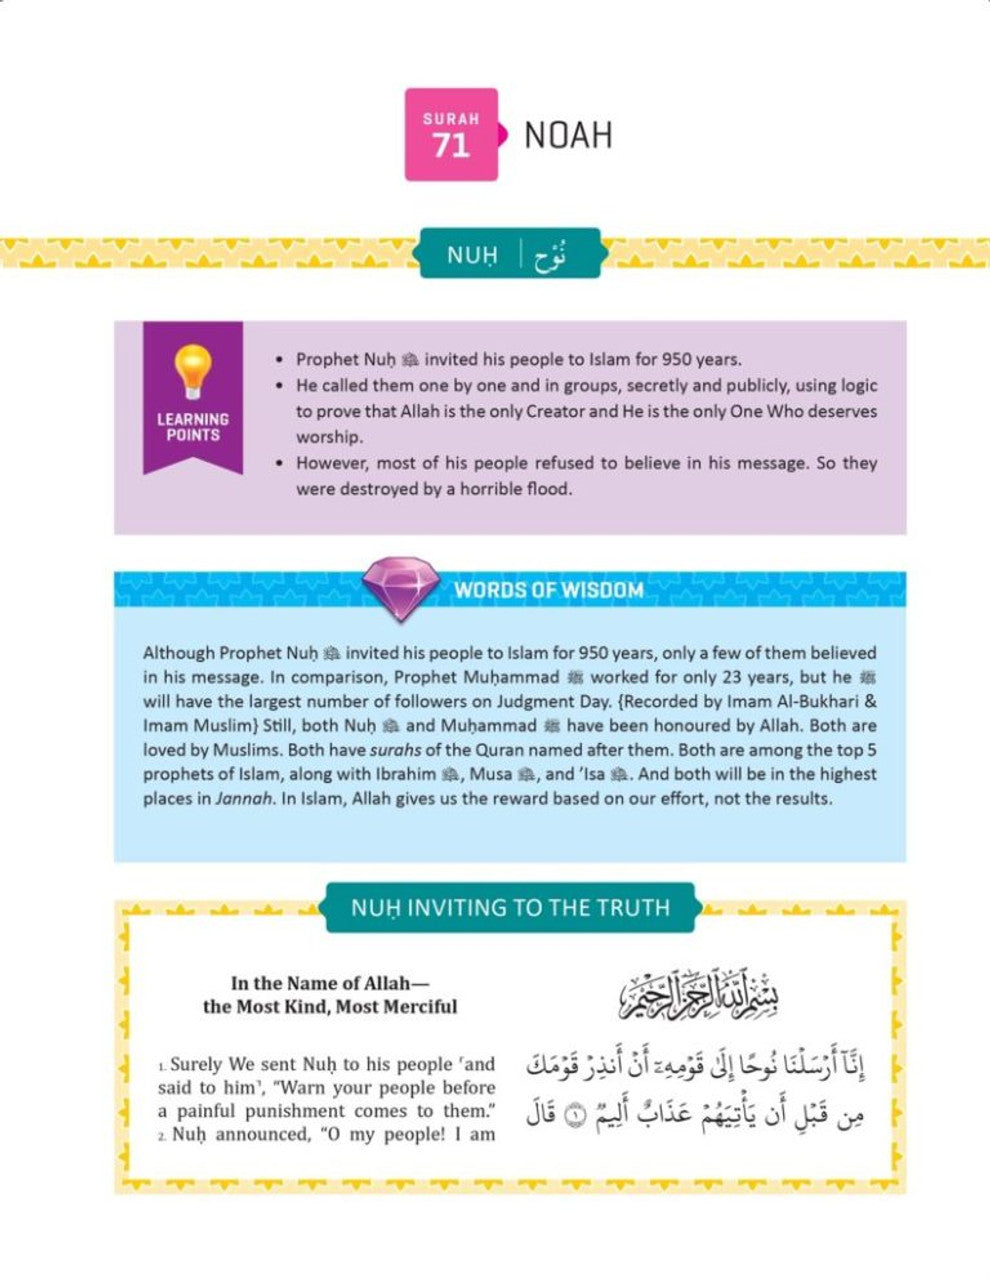 The Clear Quran for Kids - Vol 1 (Surahs 1 & 49 - 114)